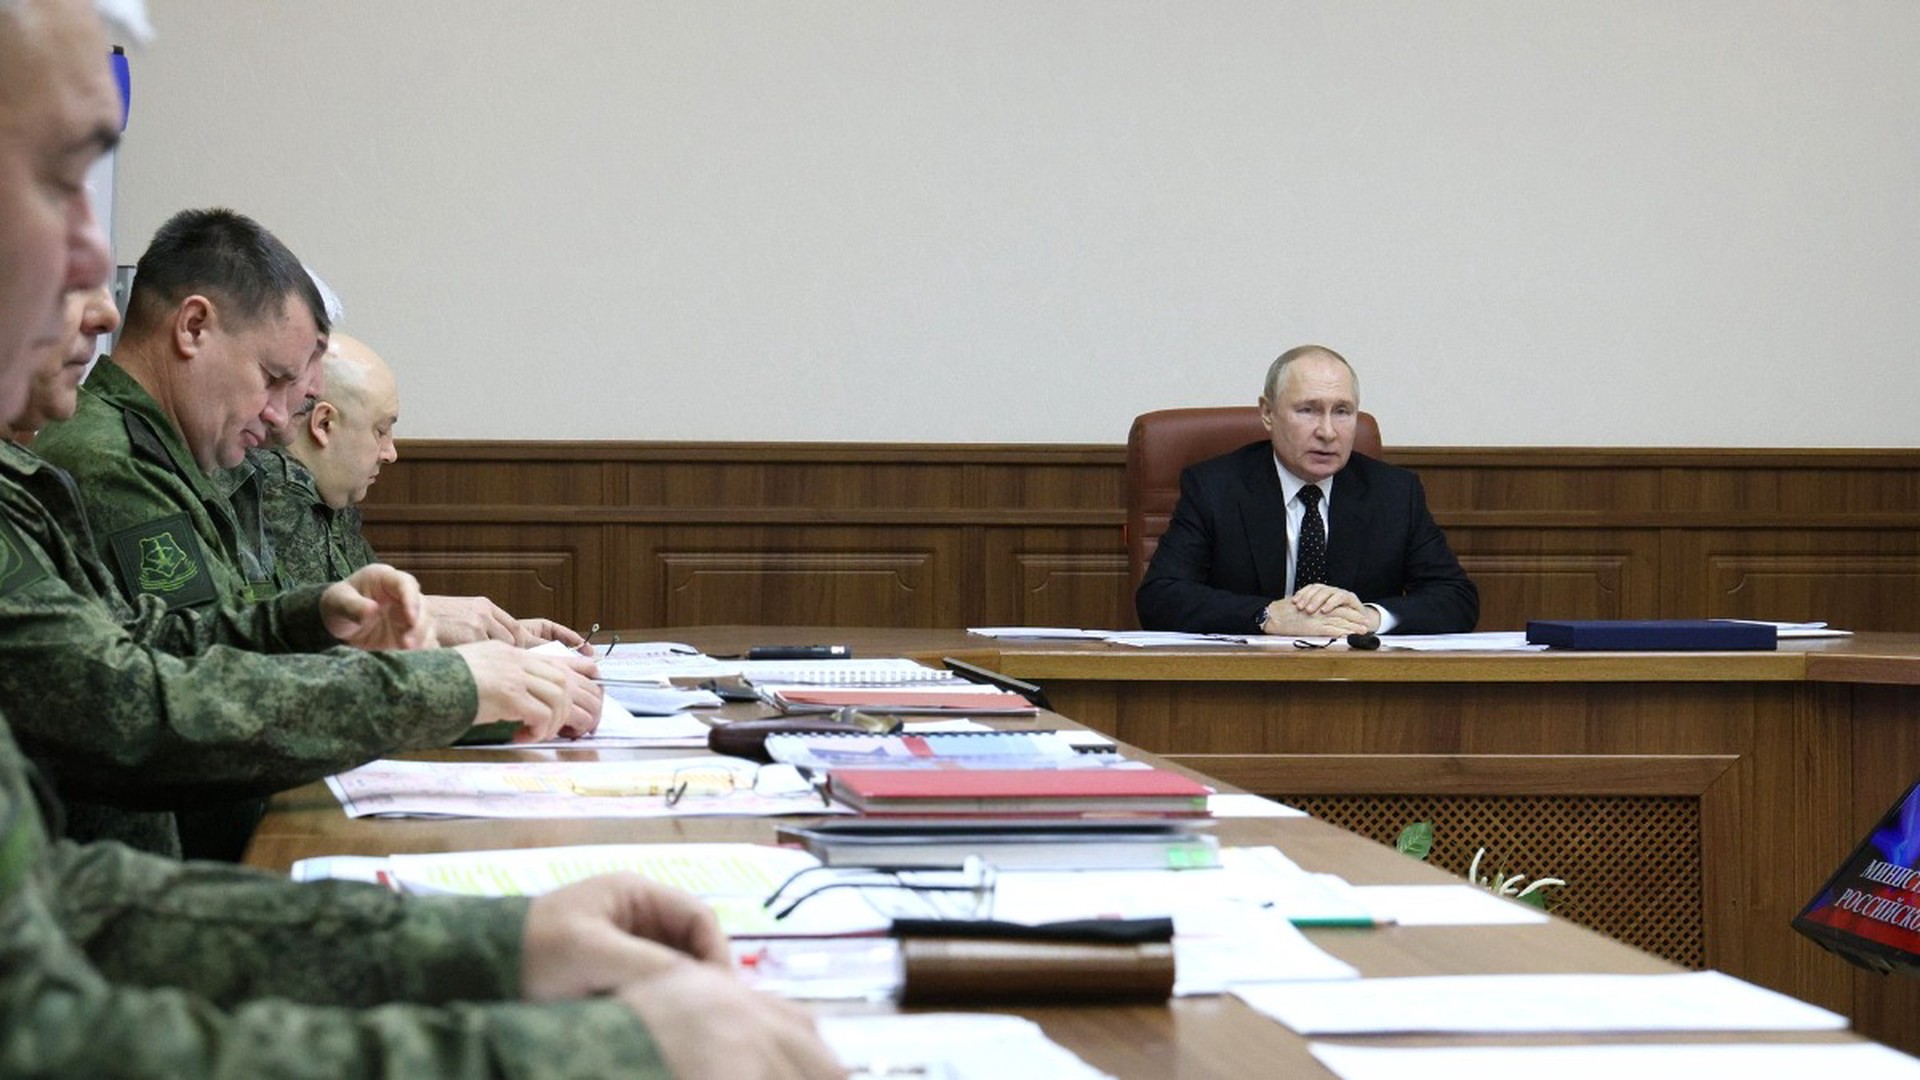 Появились кадры посещения Путиным командного пункта СВО в Ростове-на-Дону